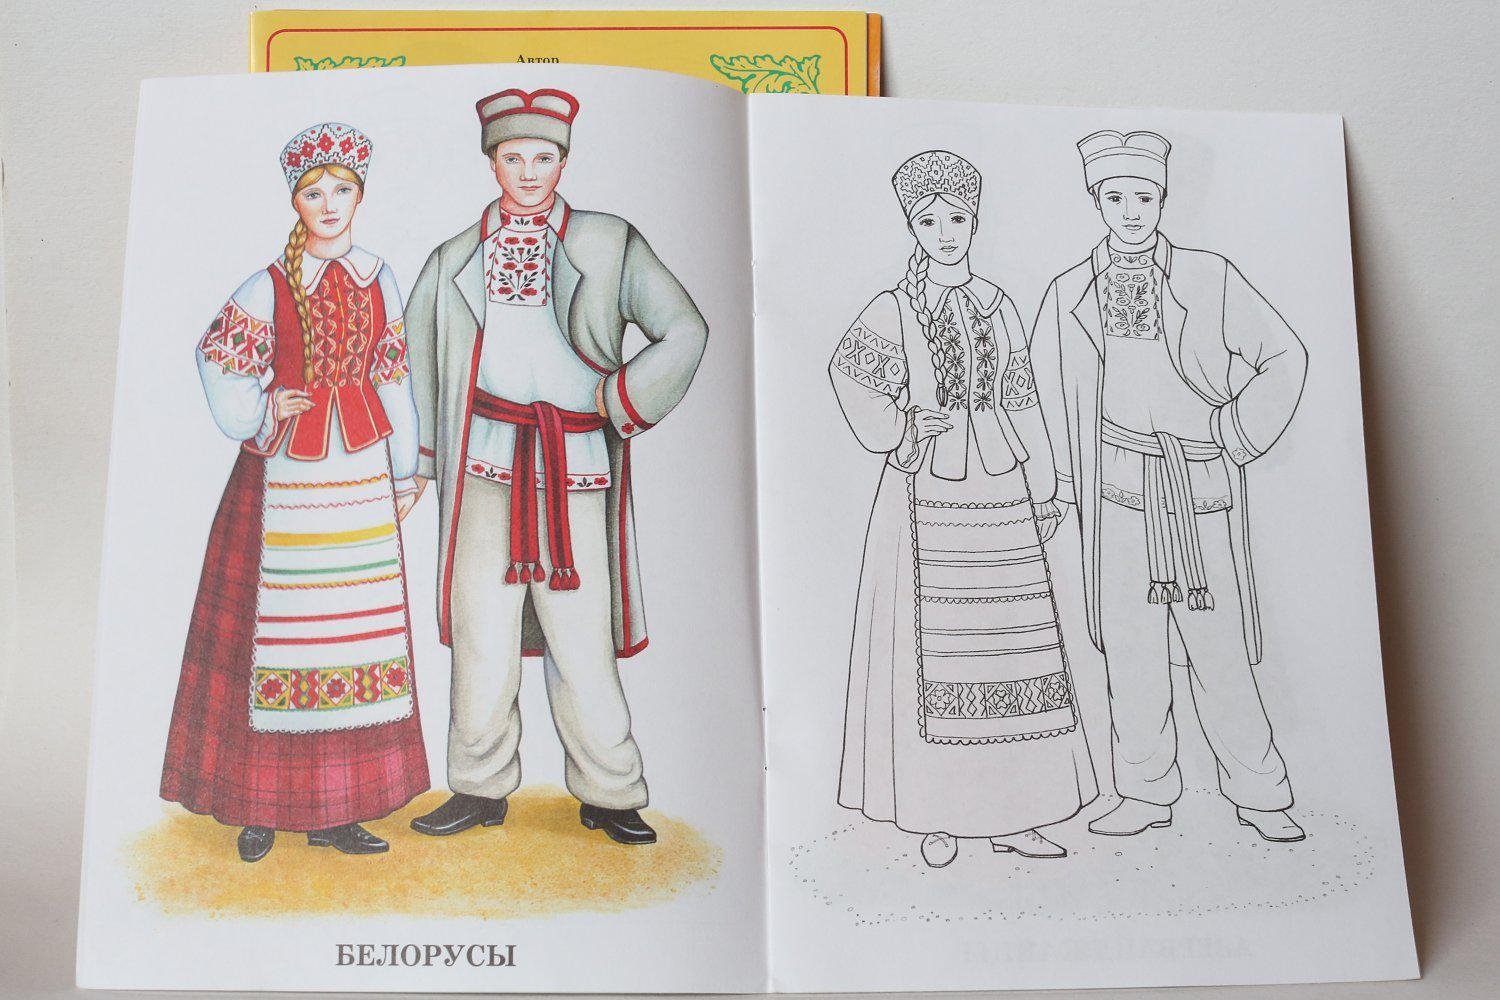 Belarusian national costume for children #4